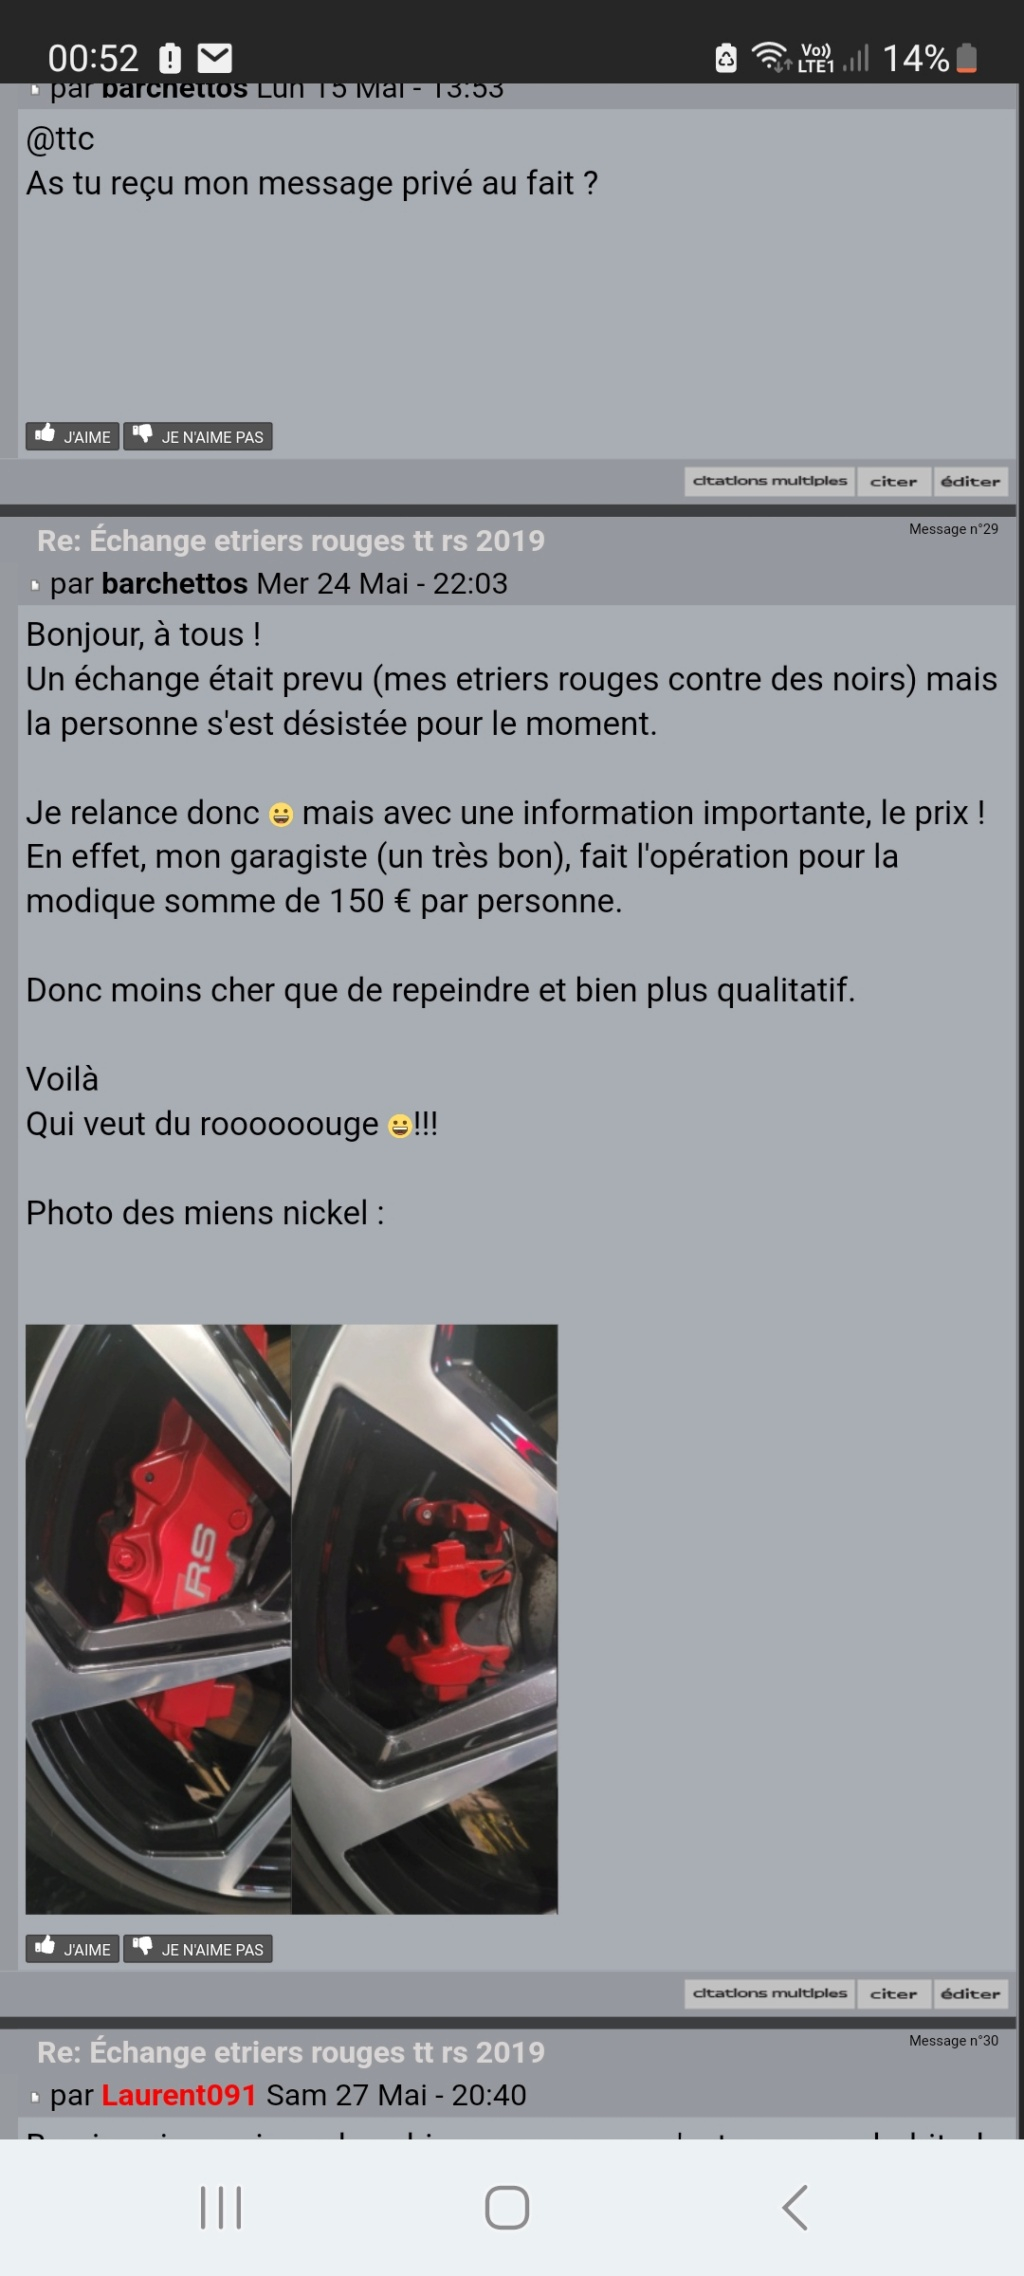 Échange etriers rouges tt rs 2019 - Page 3 Screen15